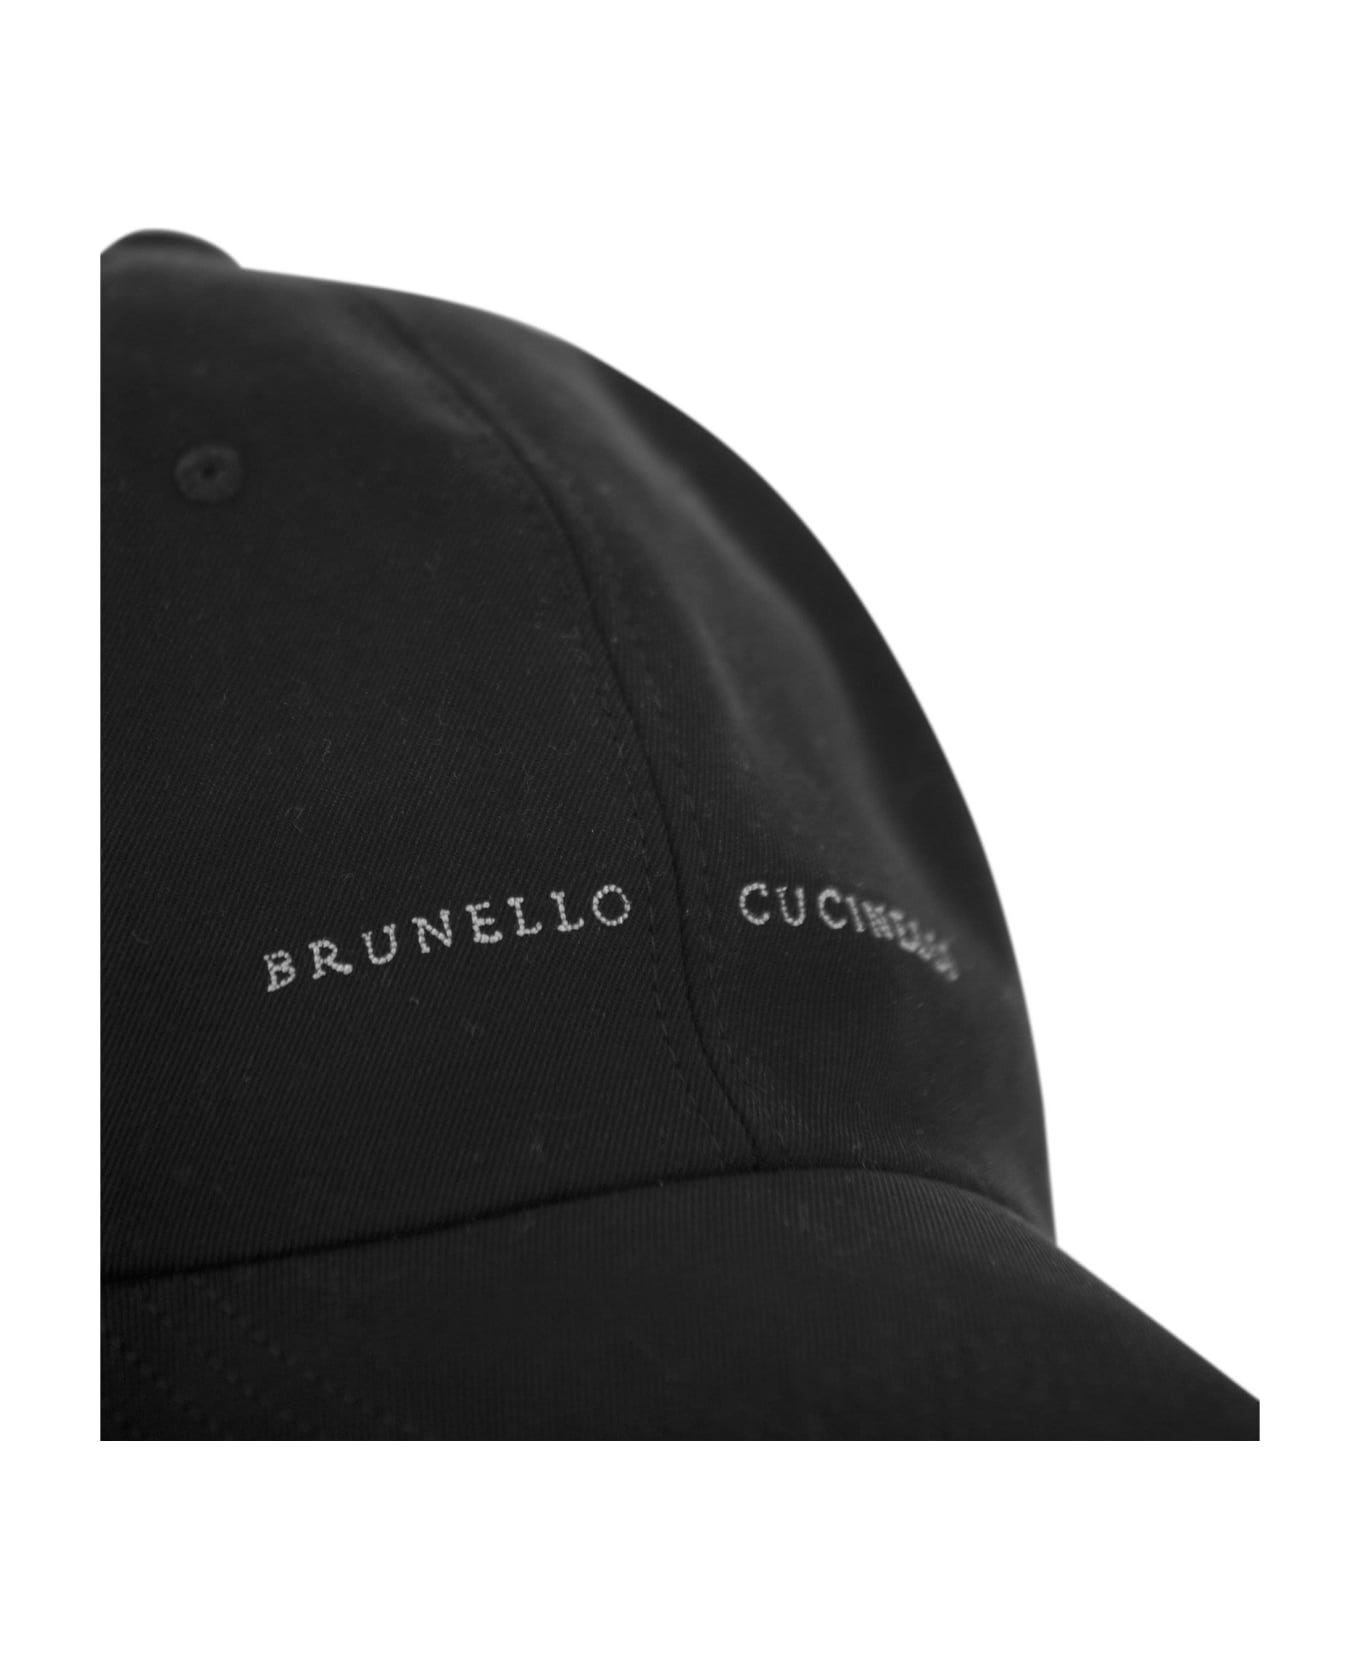 Brunello Cucinelli Cotton Canvas Baseball Cap - Black 帽子